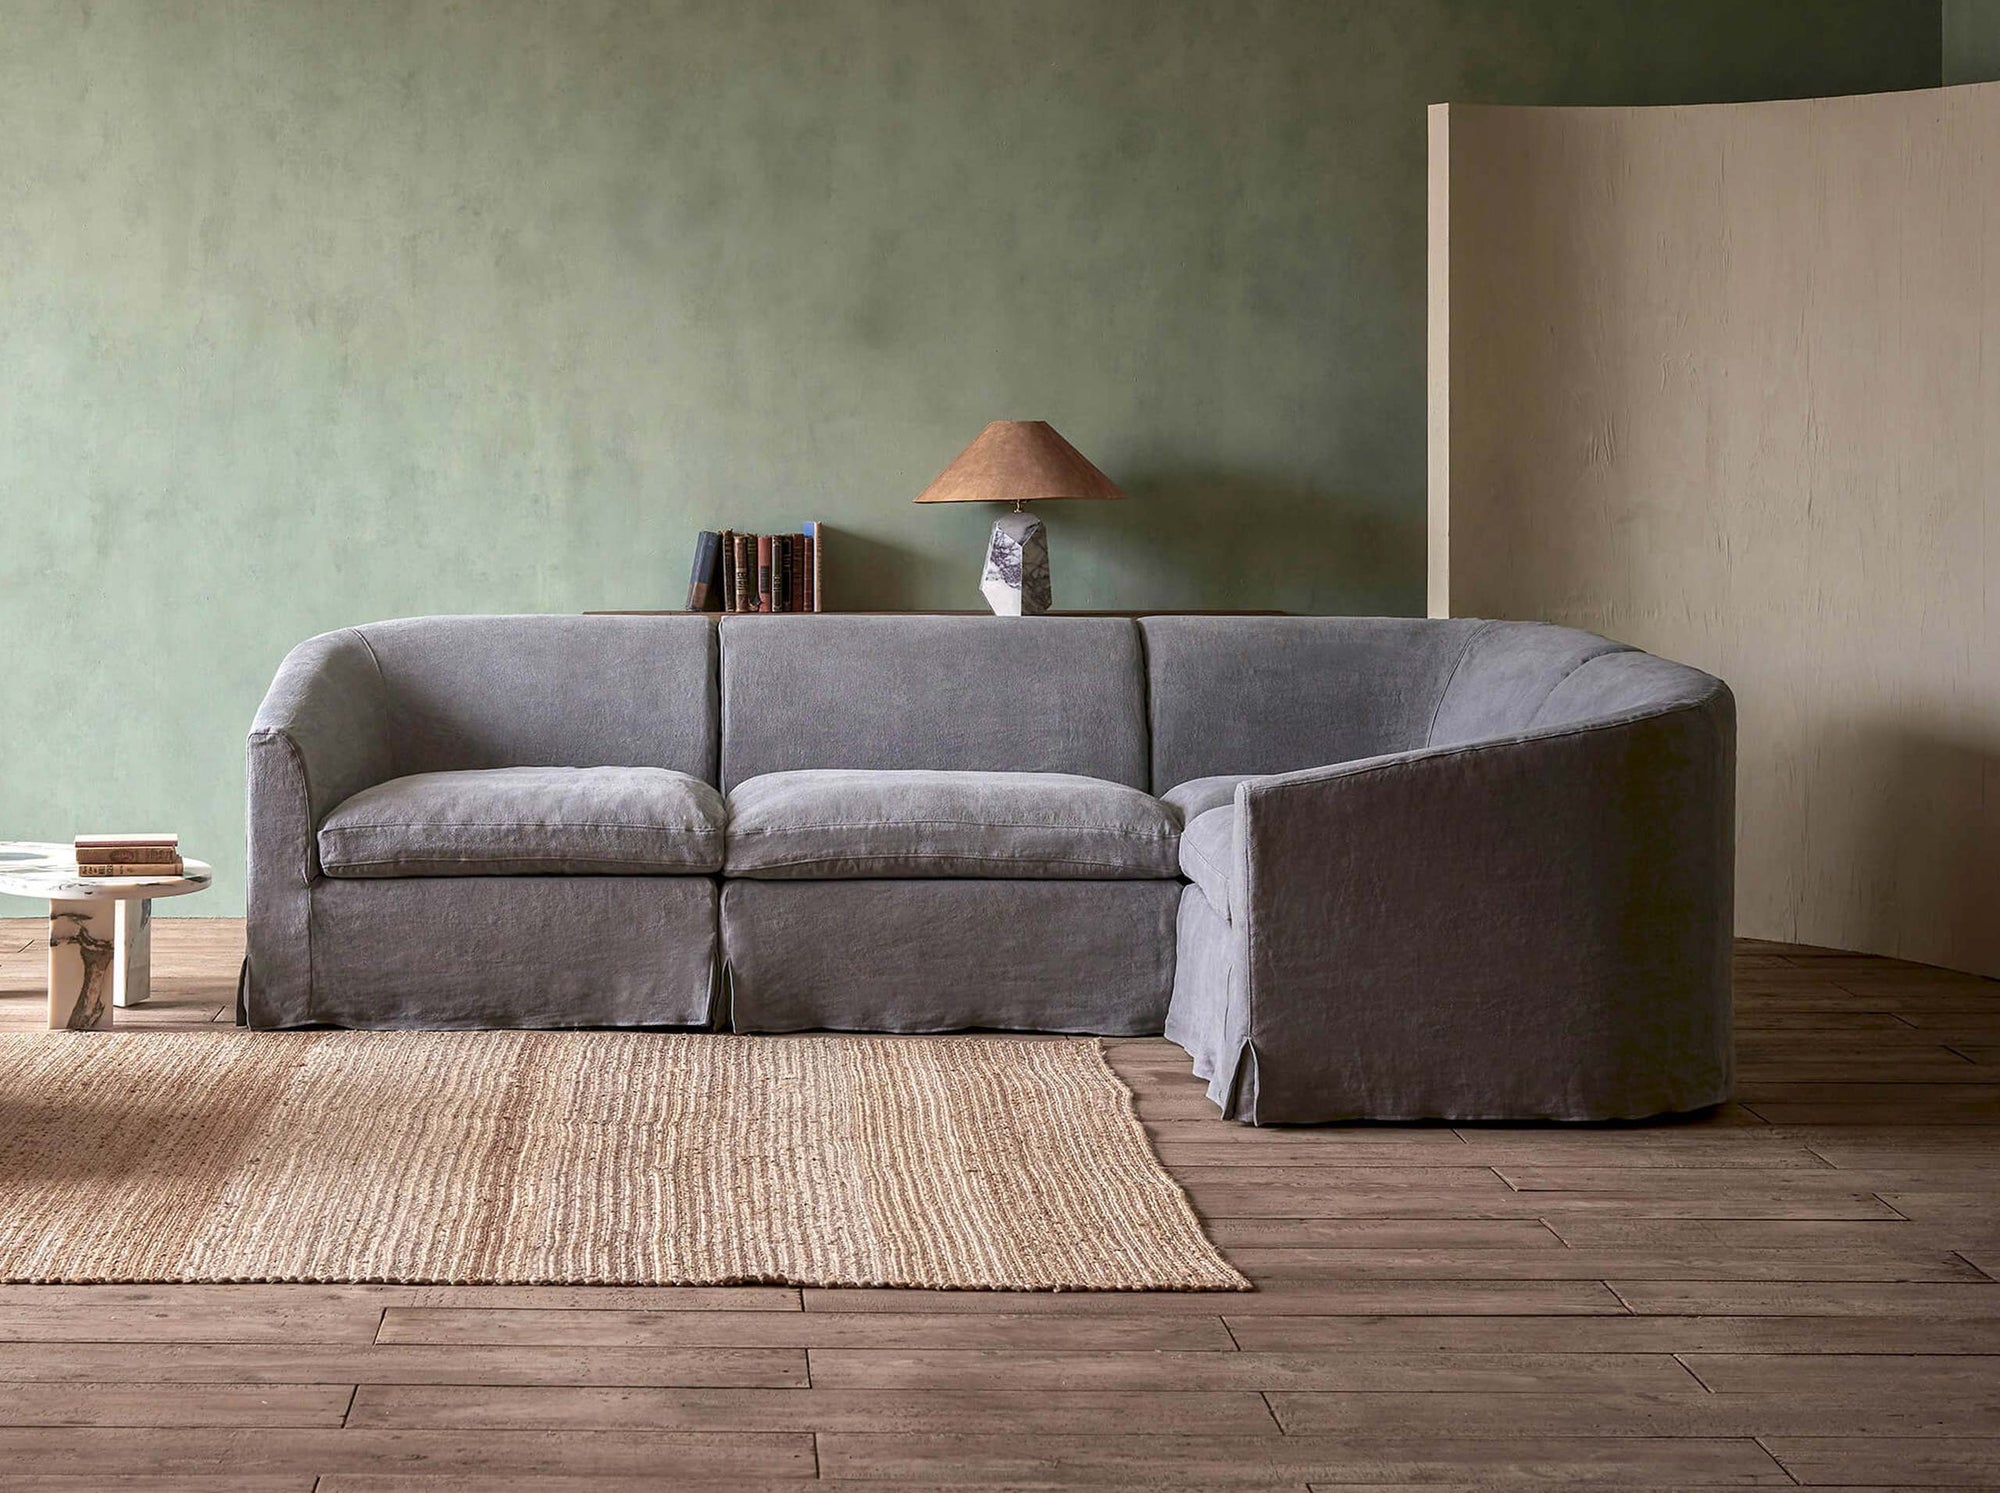 Ziki L-Shape Sectional Sofa in Ink Cap, a medium cool grey Light Weight Linen